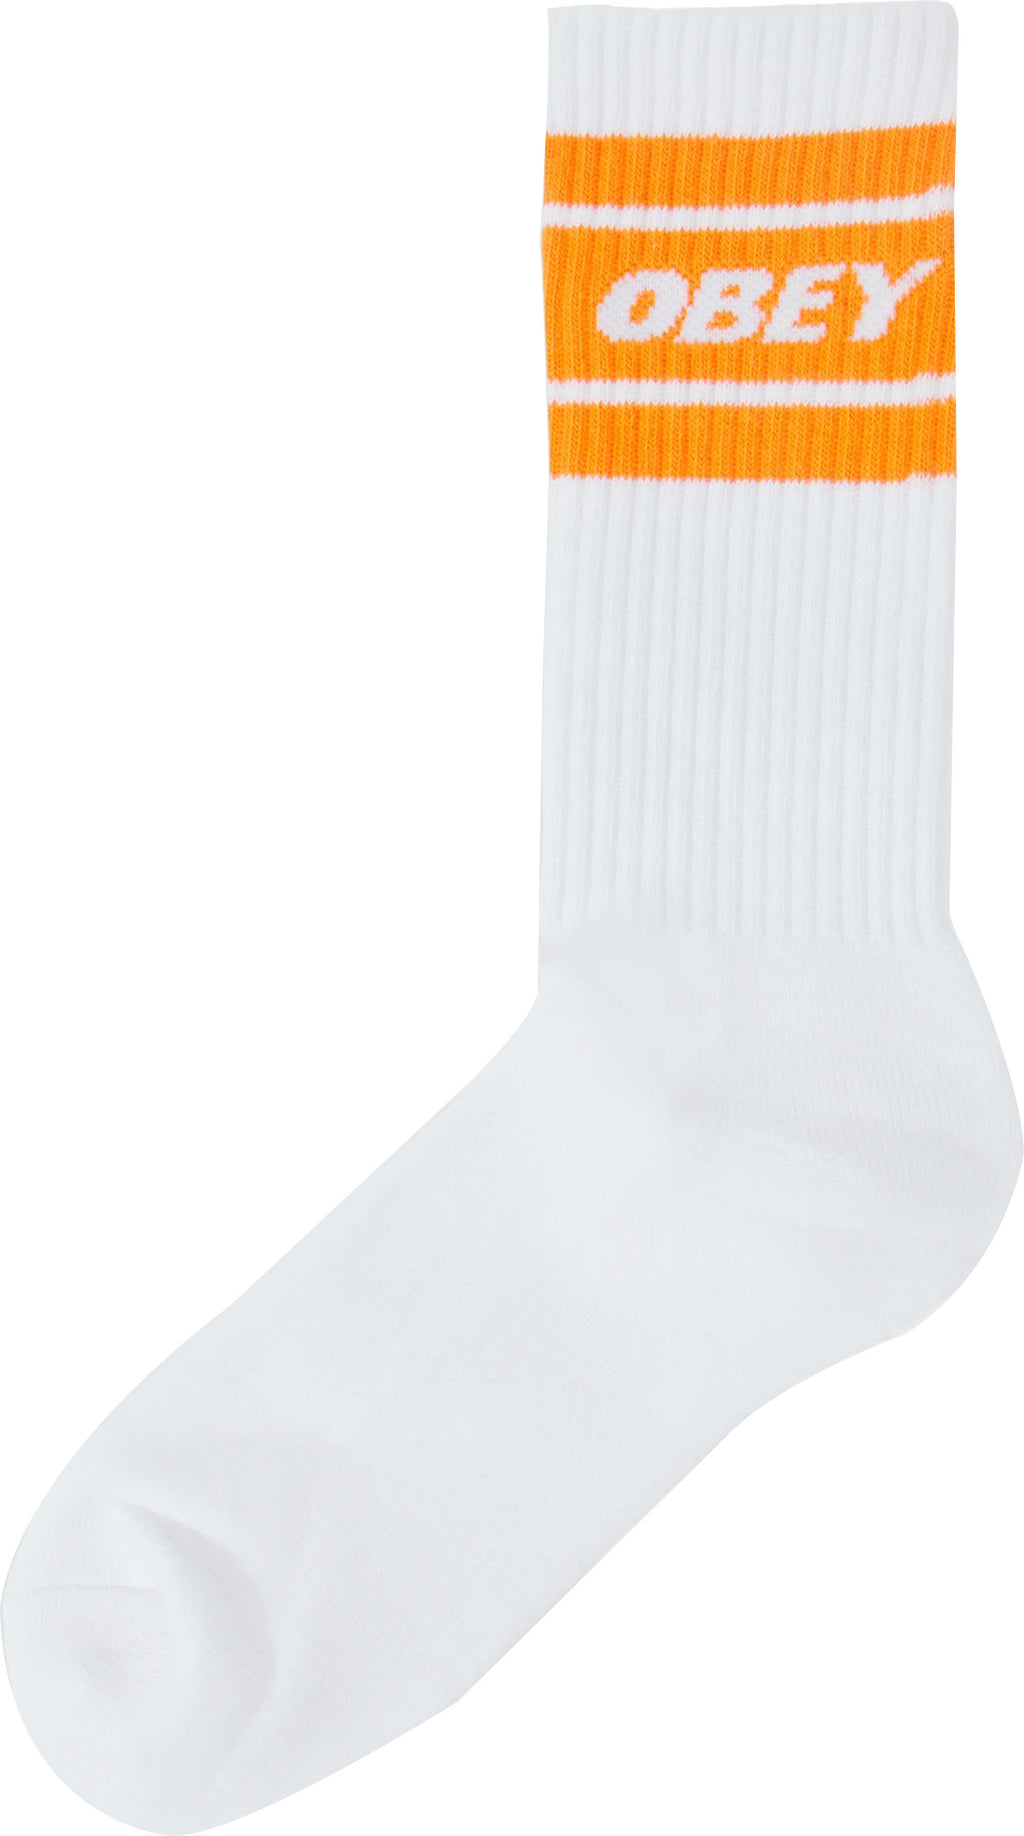  Obey Calze Cooper Ii Socks White Magma Orange Bianco Uomo - 1